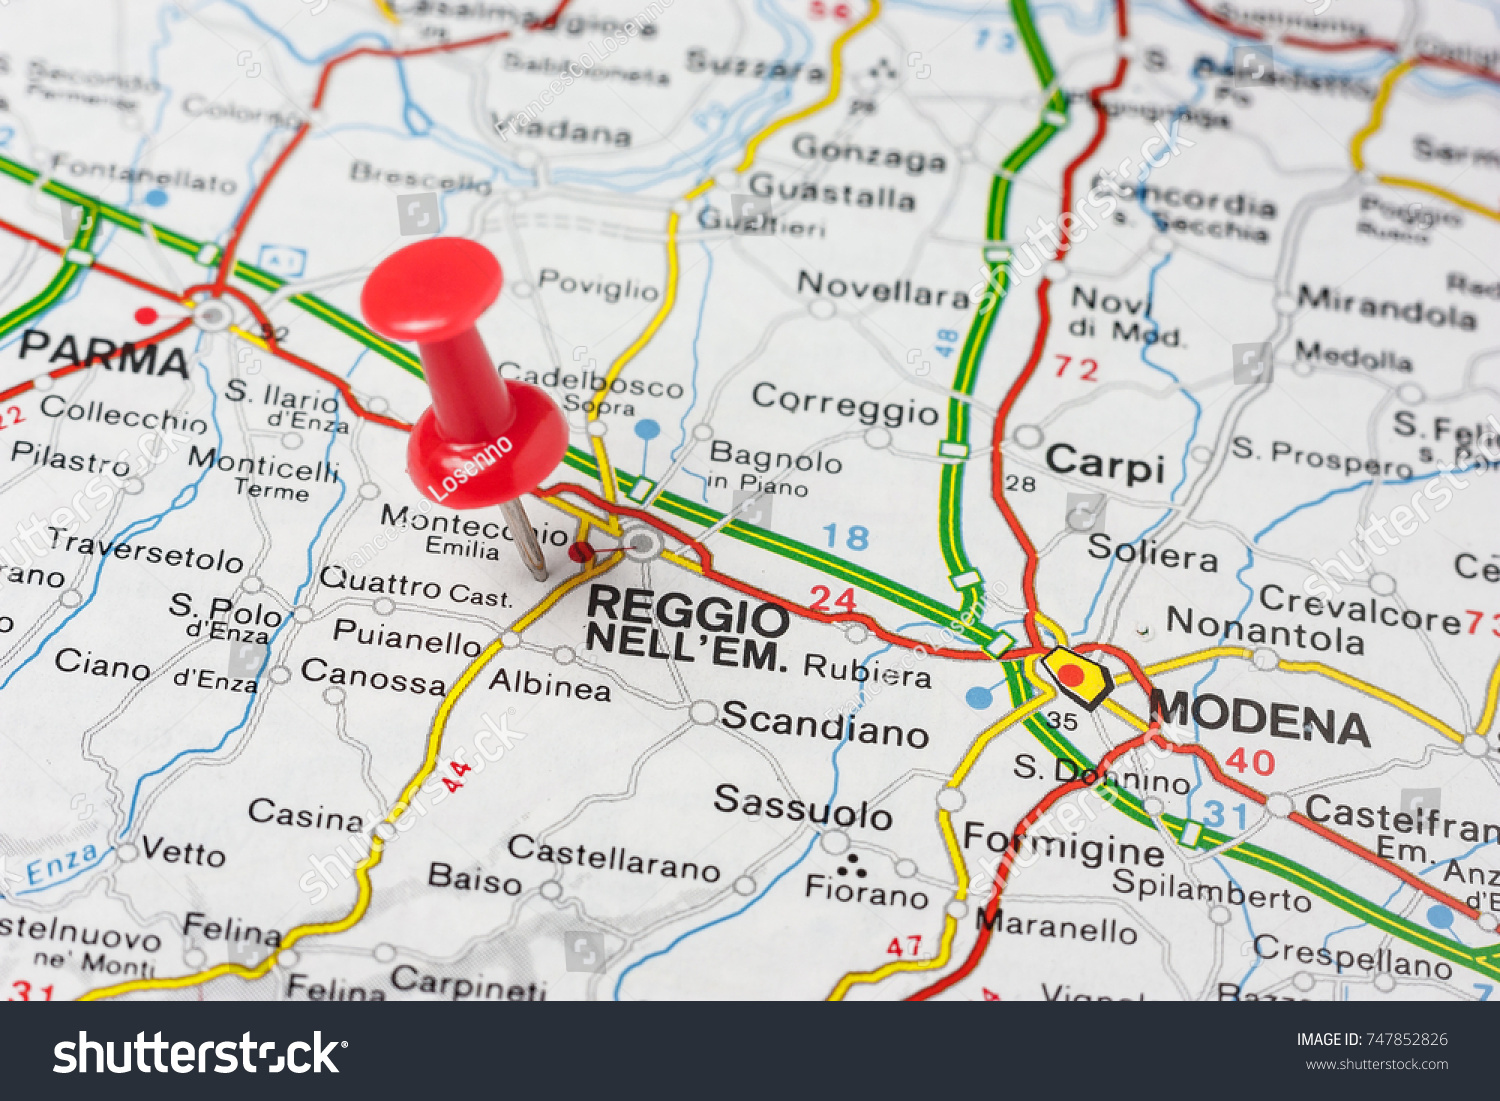 Reggio Emilia Map Images Stock Photos Vectors Shutterstock